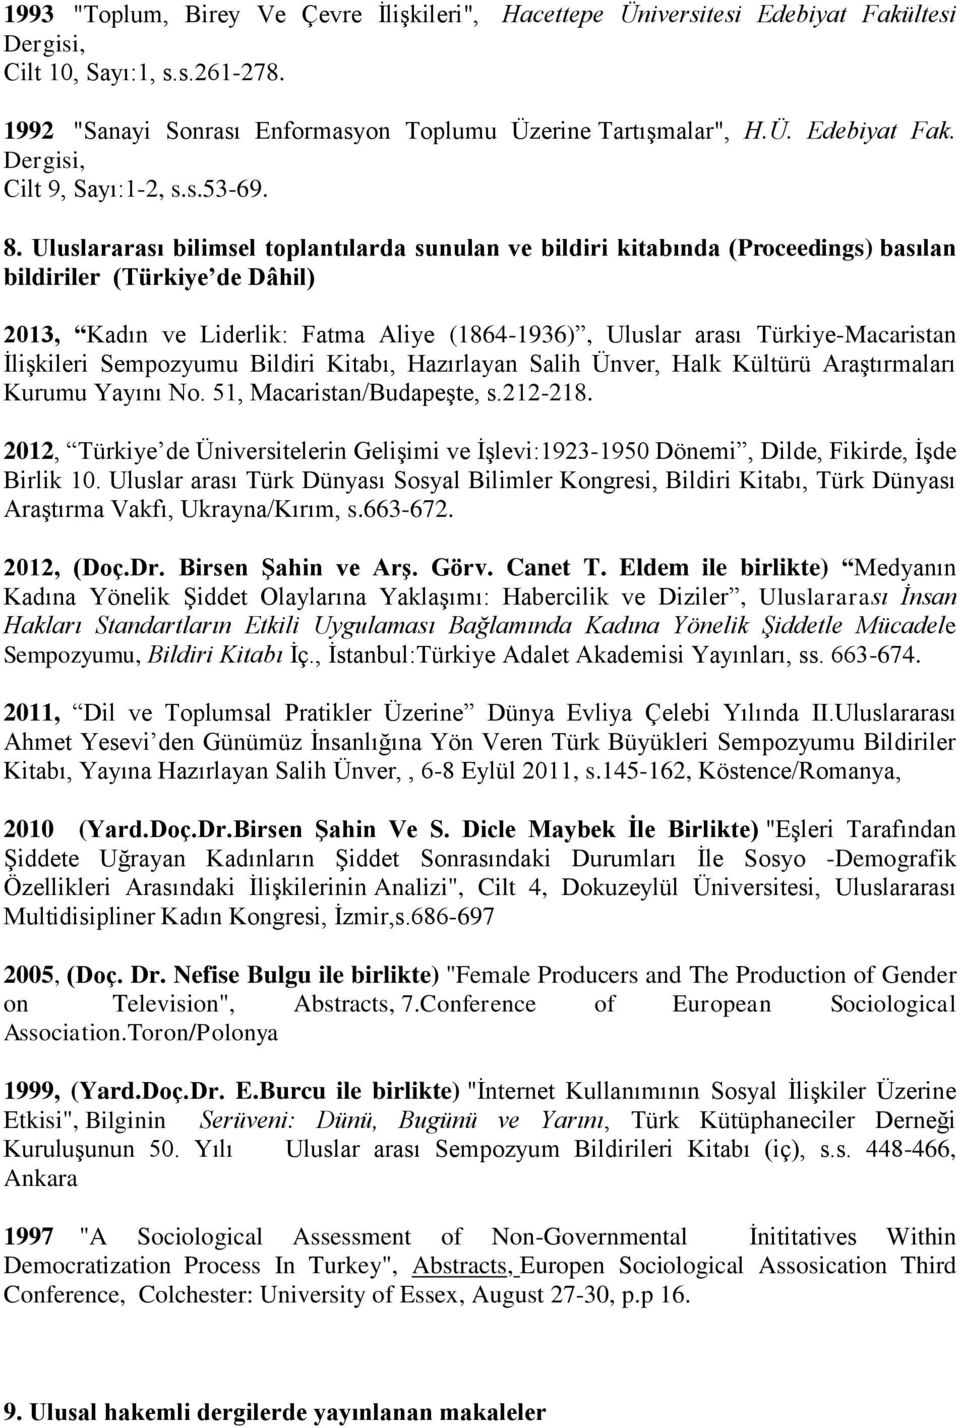 Uluslararası bilimsel toplantılarda sunulan ve bildiri kitabında (Proceedings) basılan bildiriler (Türkiye de Dâhil) 2013, Kadın ve Liderlik: Fatma Aliye (1864-1936), Uluslar arası Türkiye-Macaristan